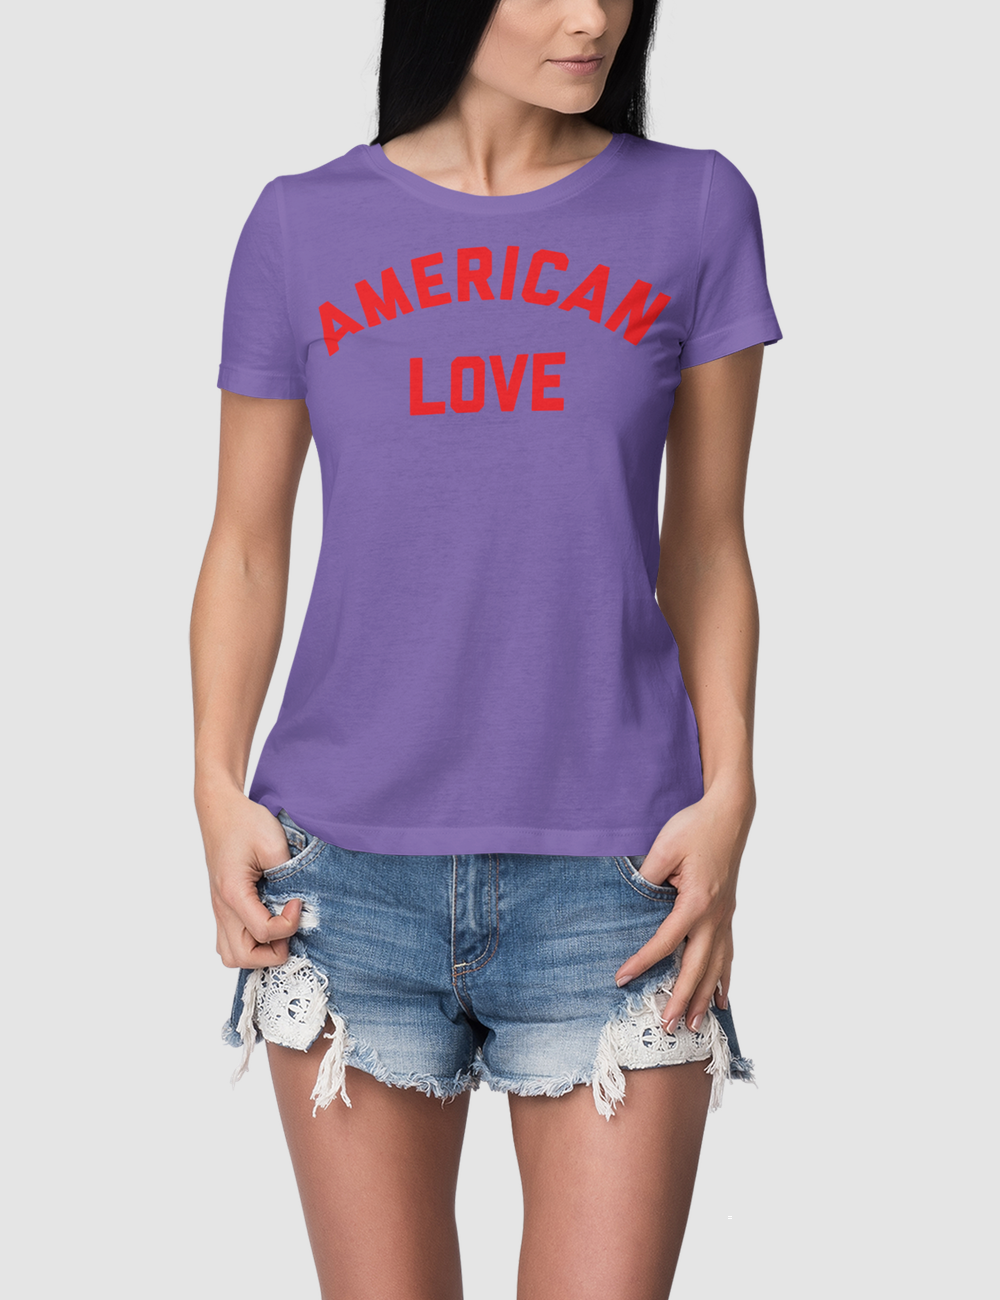 American Love | Women's Fitted T-Shirt OniTakai